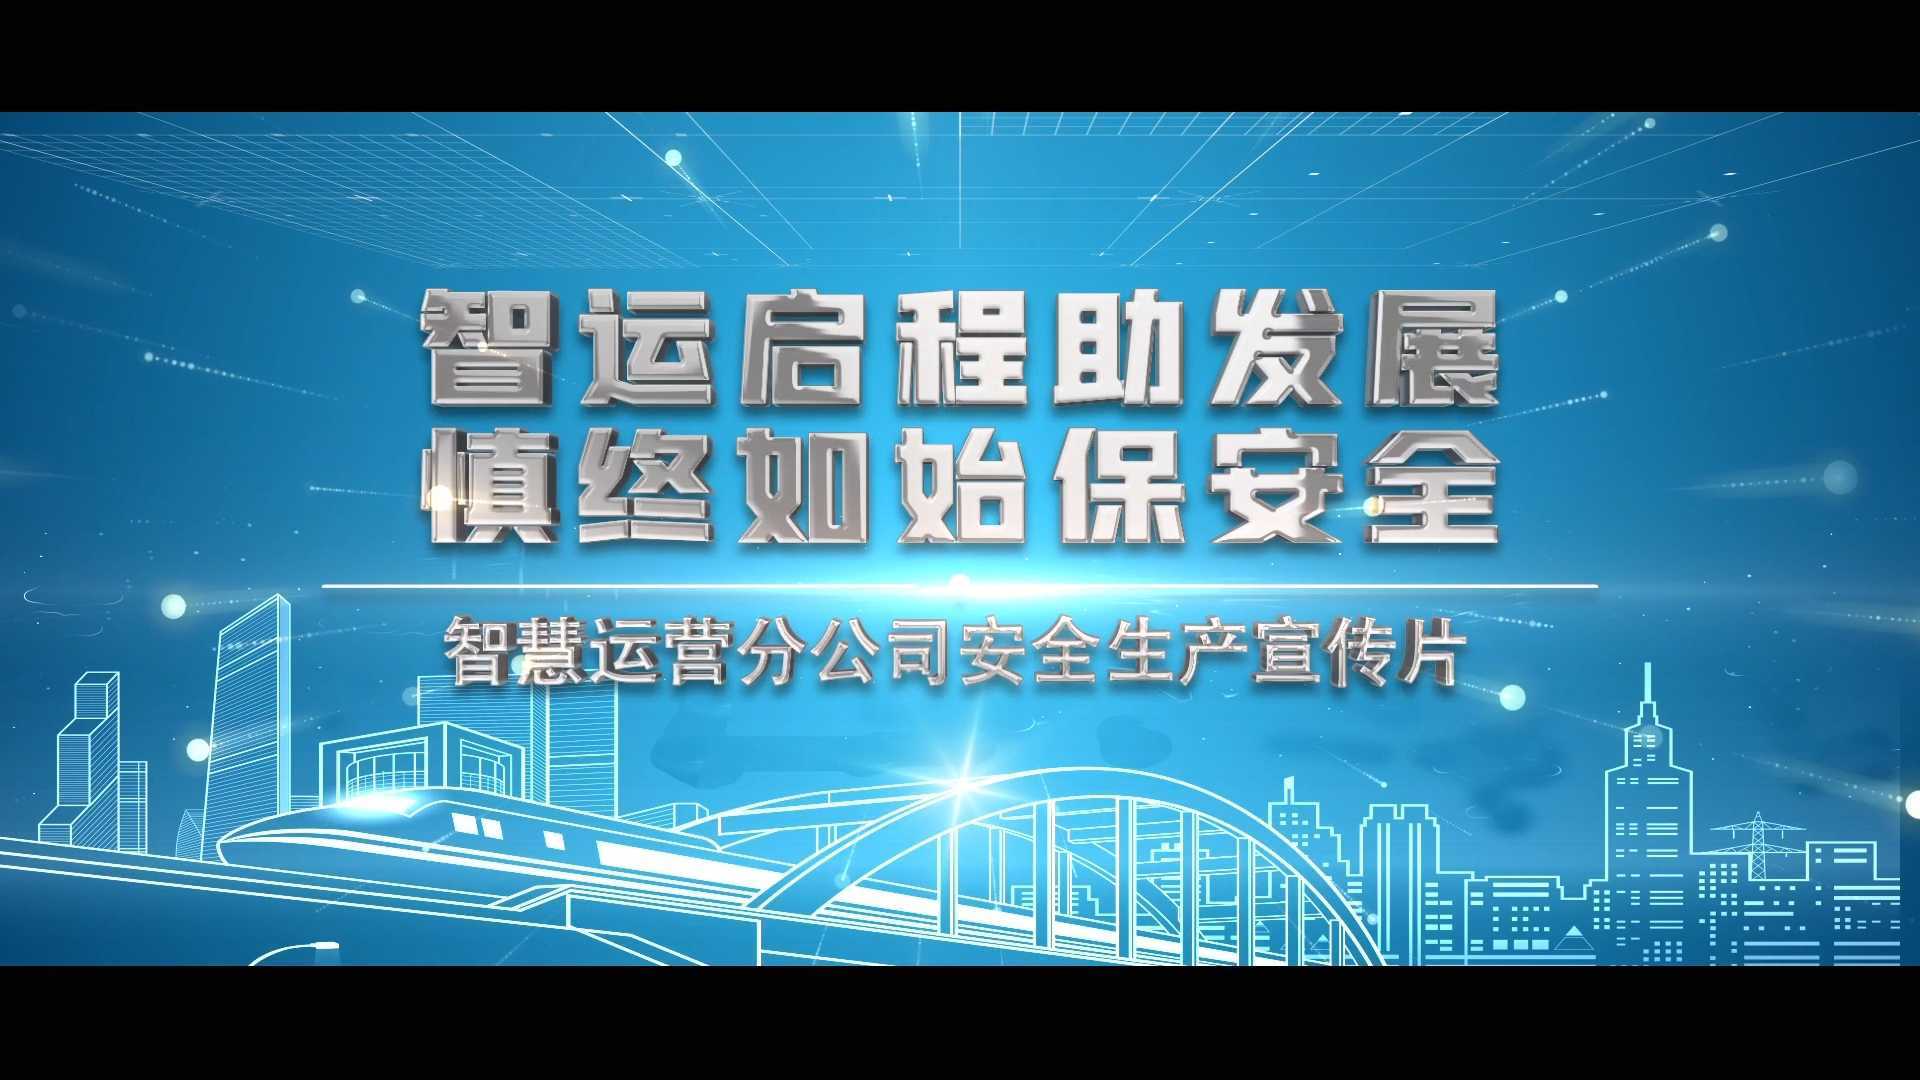 宁波轨道交通-智慧运营分公司安全生产宣传片